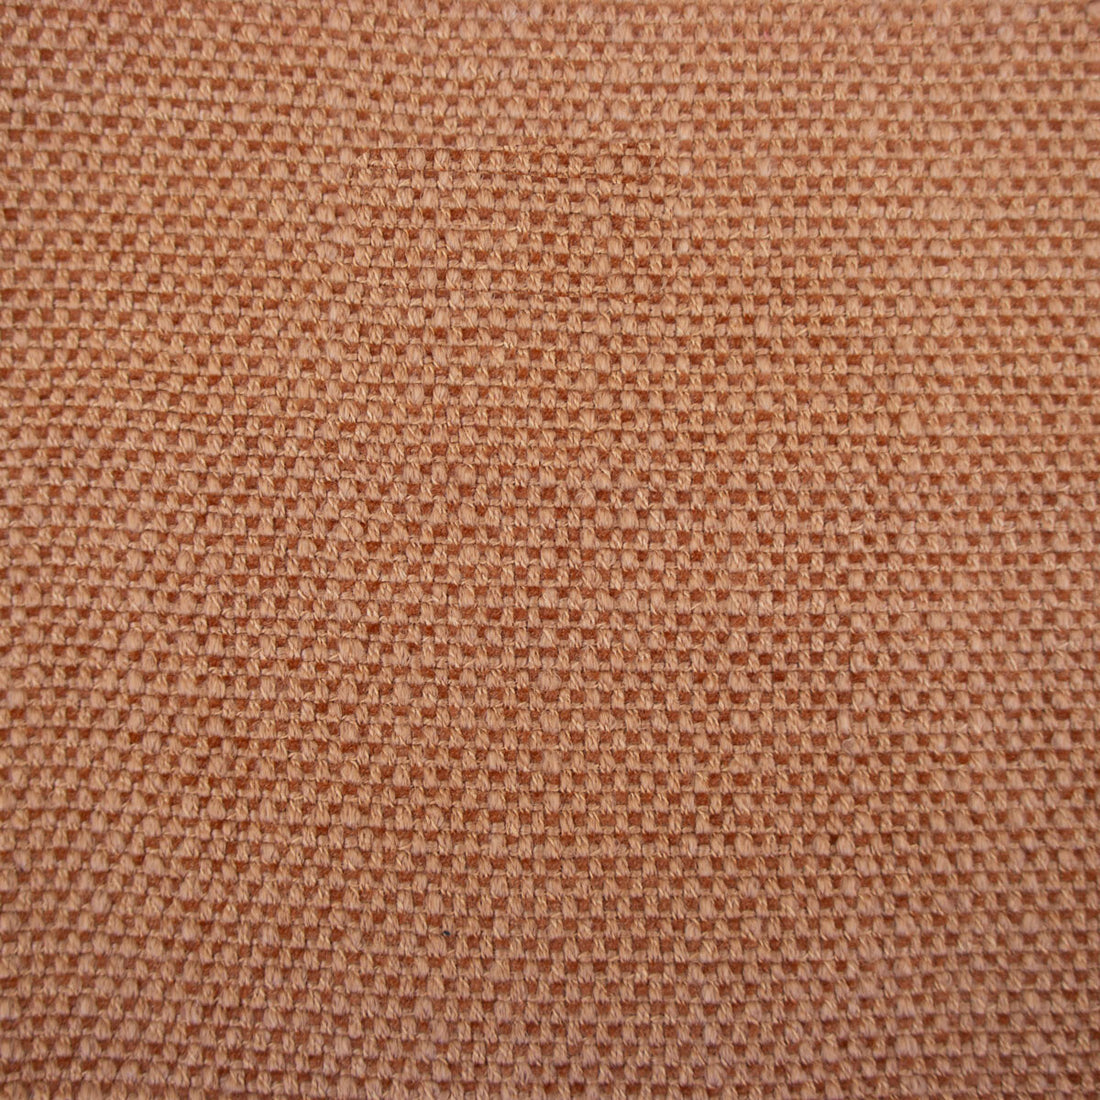 Hugo fabric in caldero color - pattern LCT1053.017.0 - by Gaston y Daniela in the Lorenzo Castillo VI collection